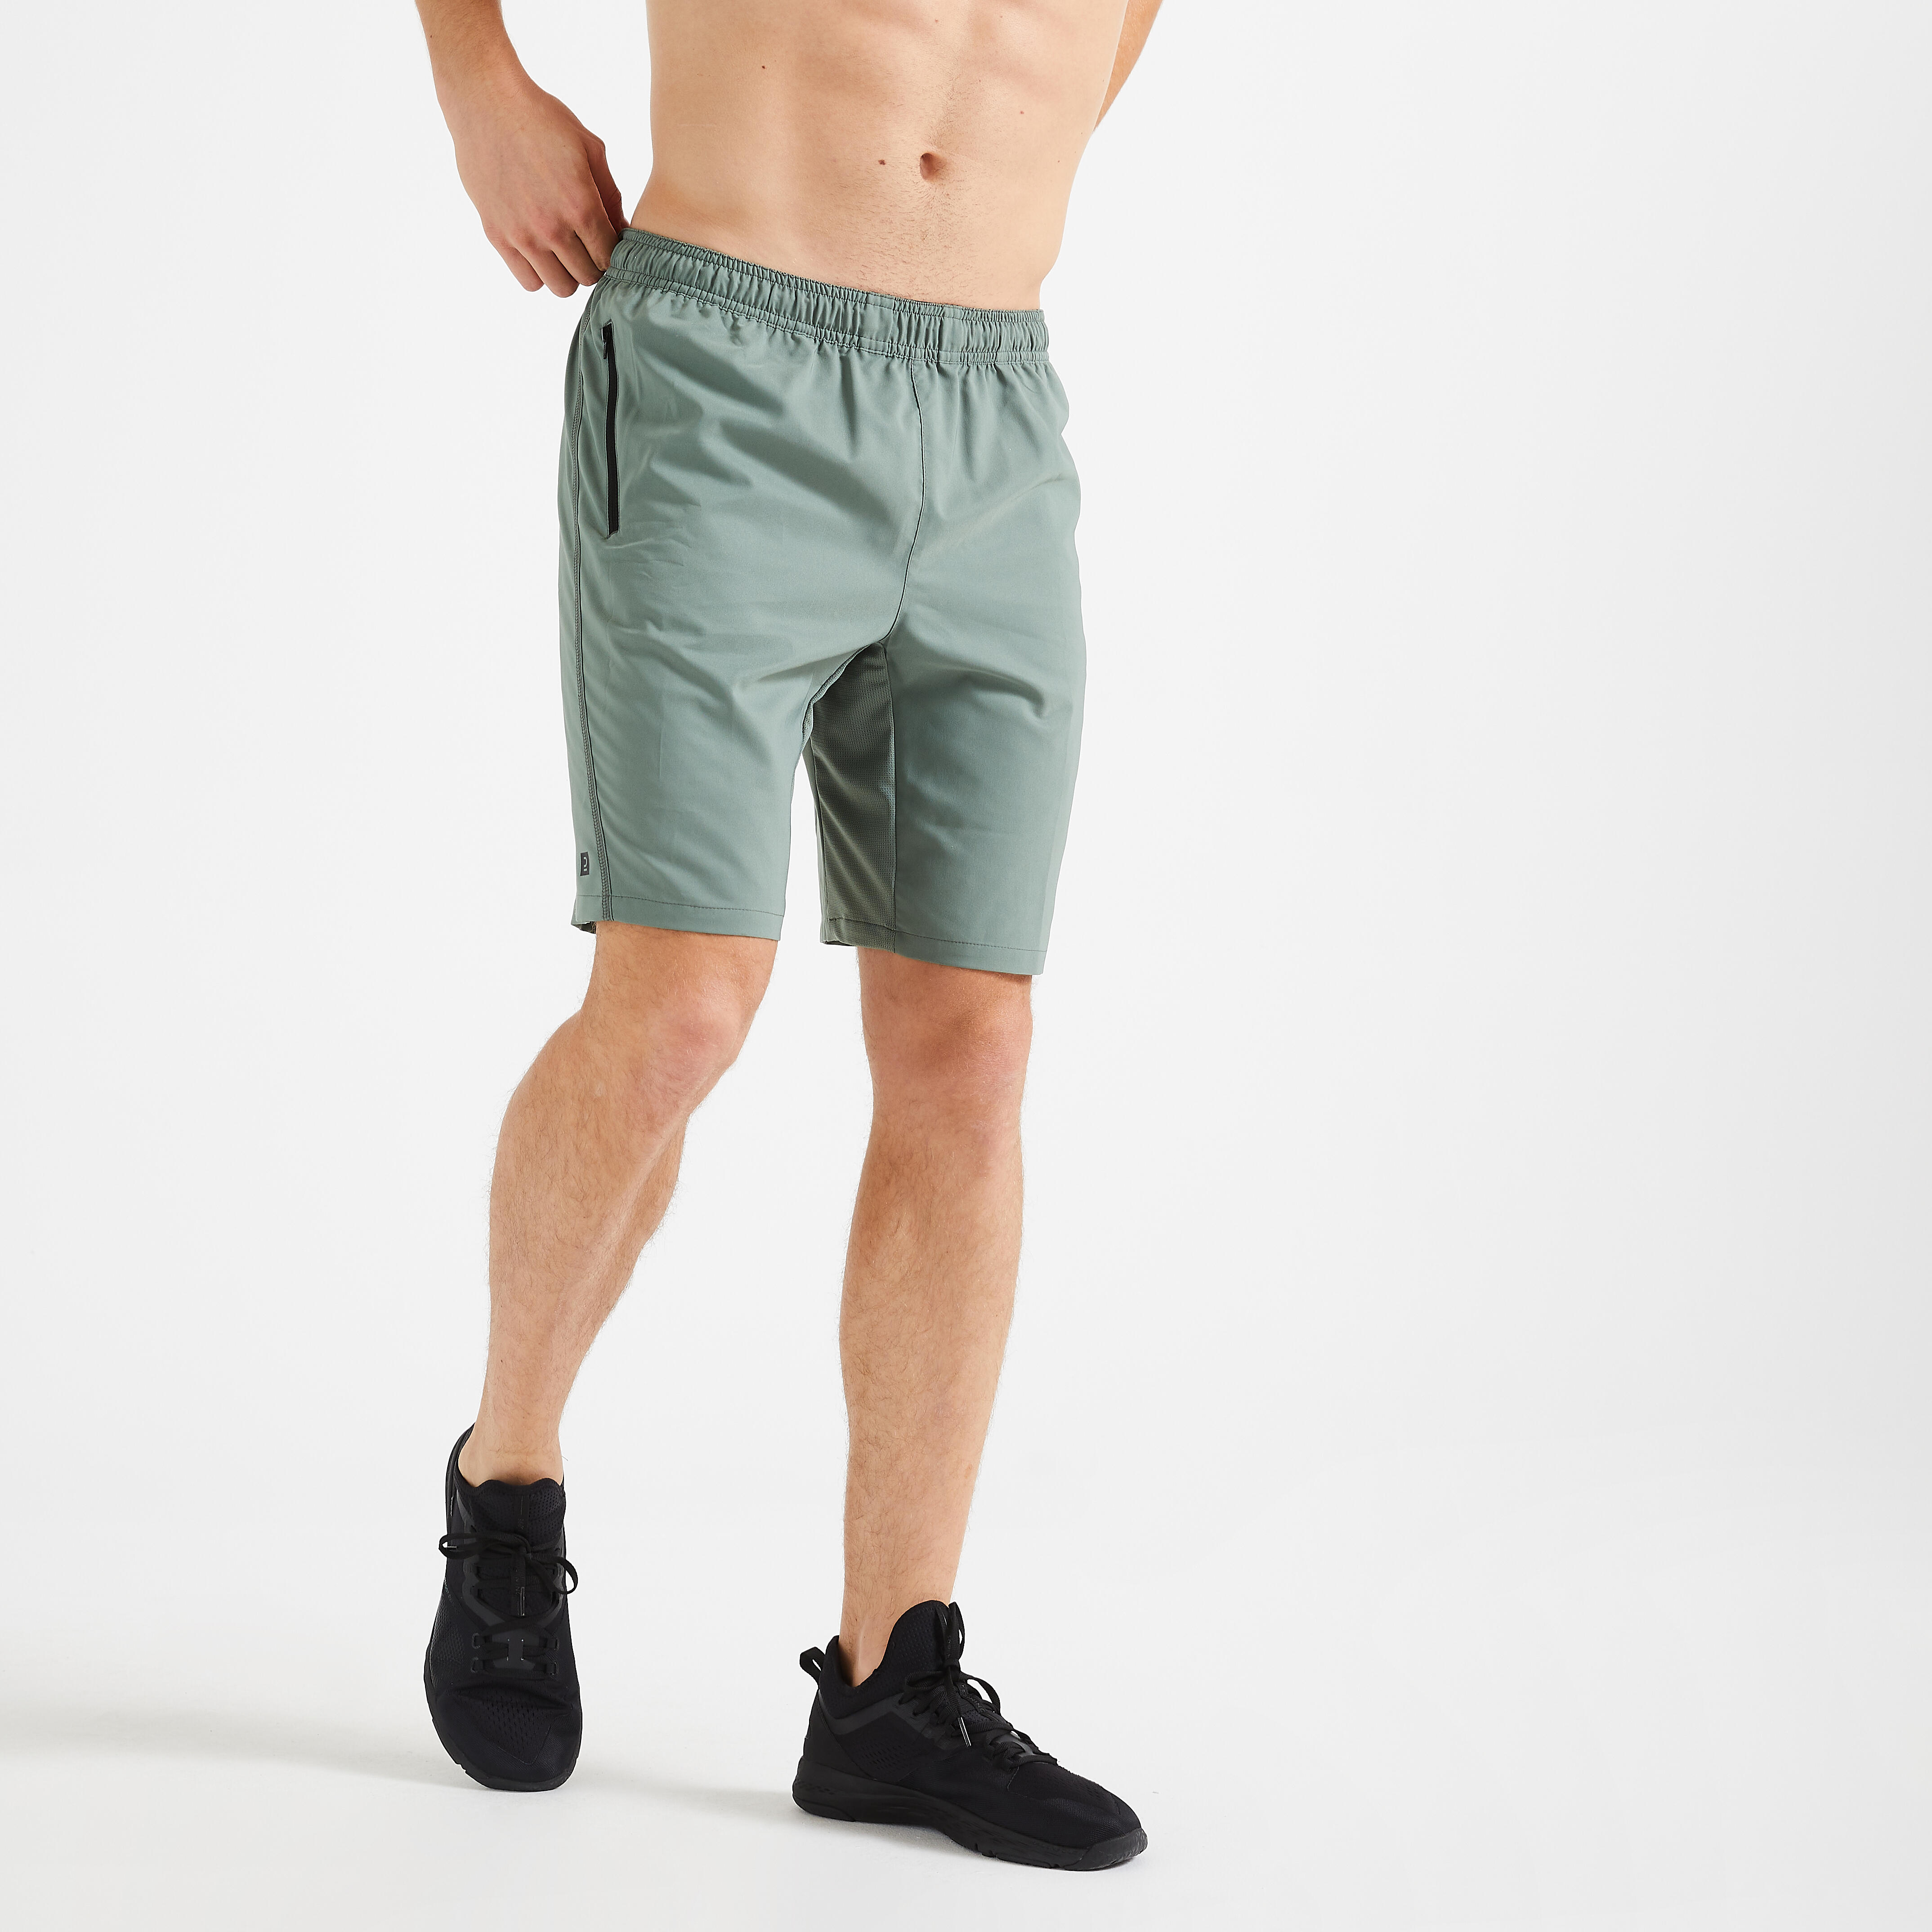 Pantalon scurt 120 Fitness cu buzunare și fermoar verde Bărbați La Oferta Online decathlon imagine La Oferta Online